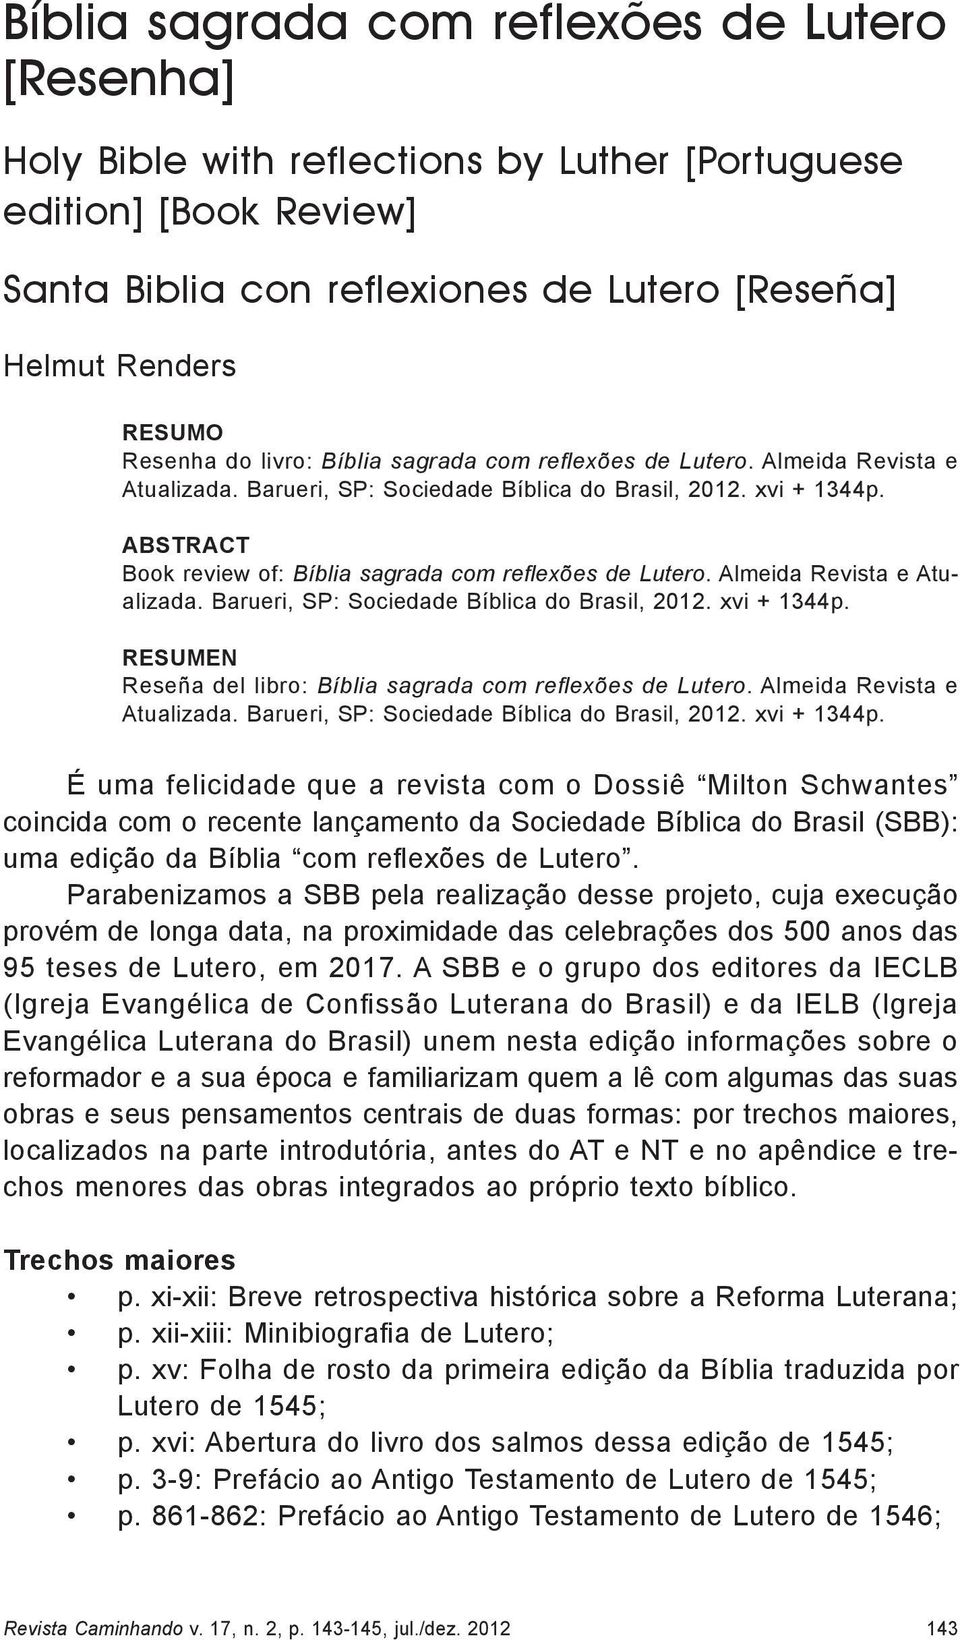 Abstract Book review of: Bíblia sagrada com reflexões de Lutero. Almeida Revista e Atualizada. Barueri, SP: Sociedade Bíblica do Brasil, 2012. xvi + 1344p.